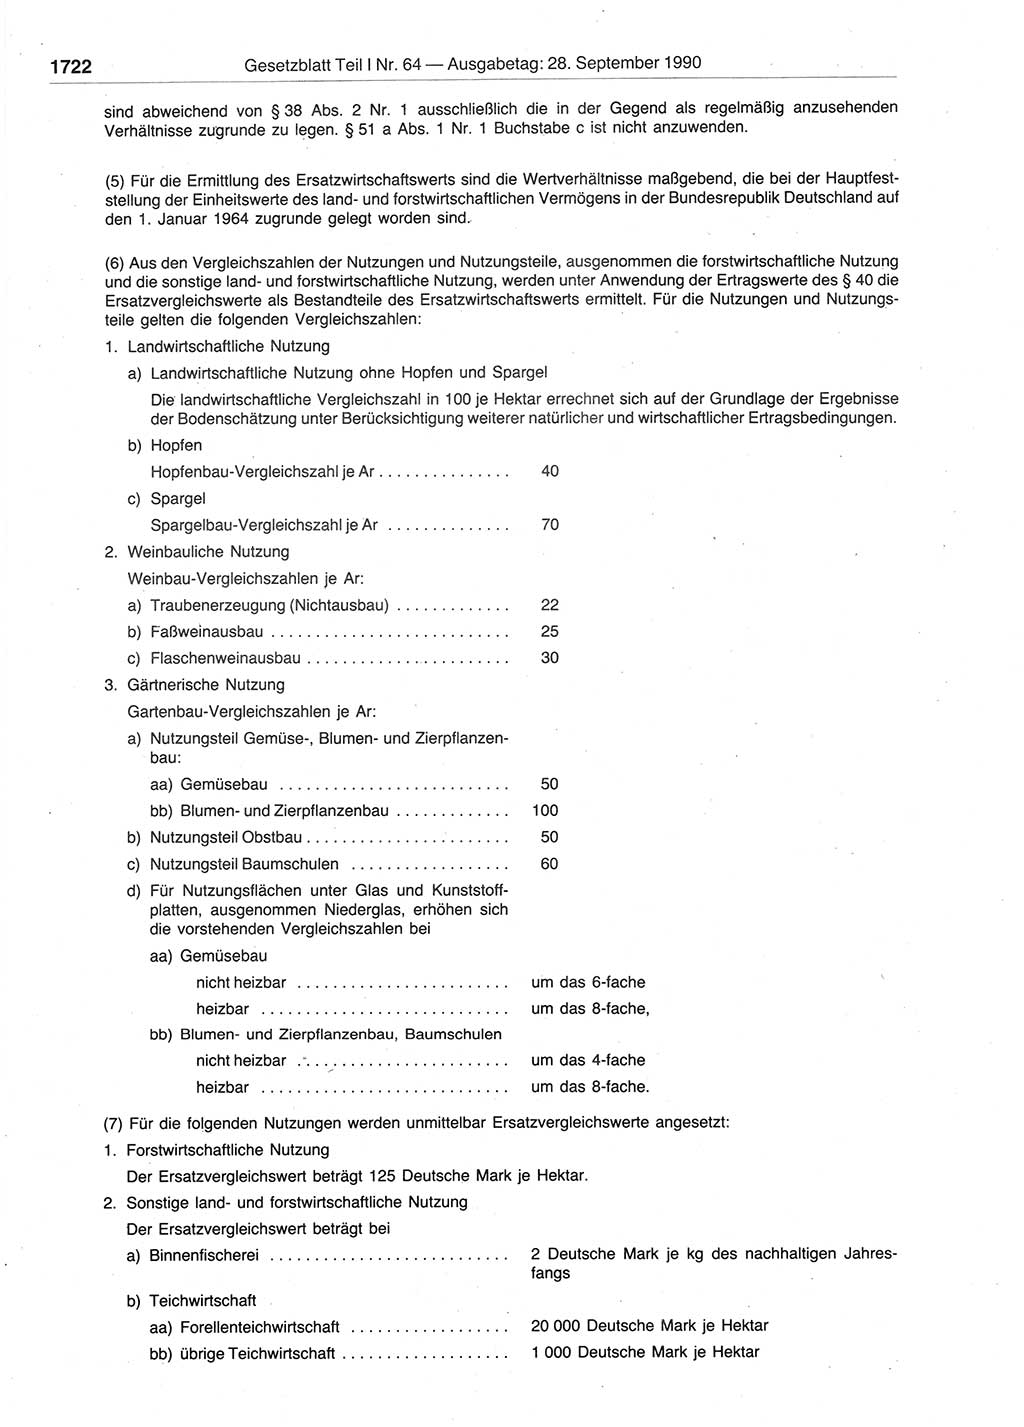 Gesetzblatt (GBl.) der Deutschen Demokratischen Republik (DDR) Teil Ⅰ 1990, Seite 1722 (GBl. DDR Ⅰ 1990, S. 1722)